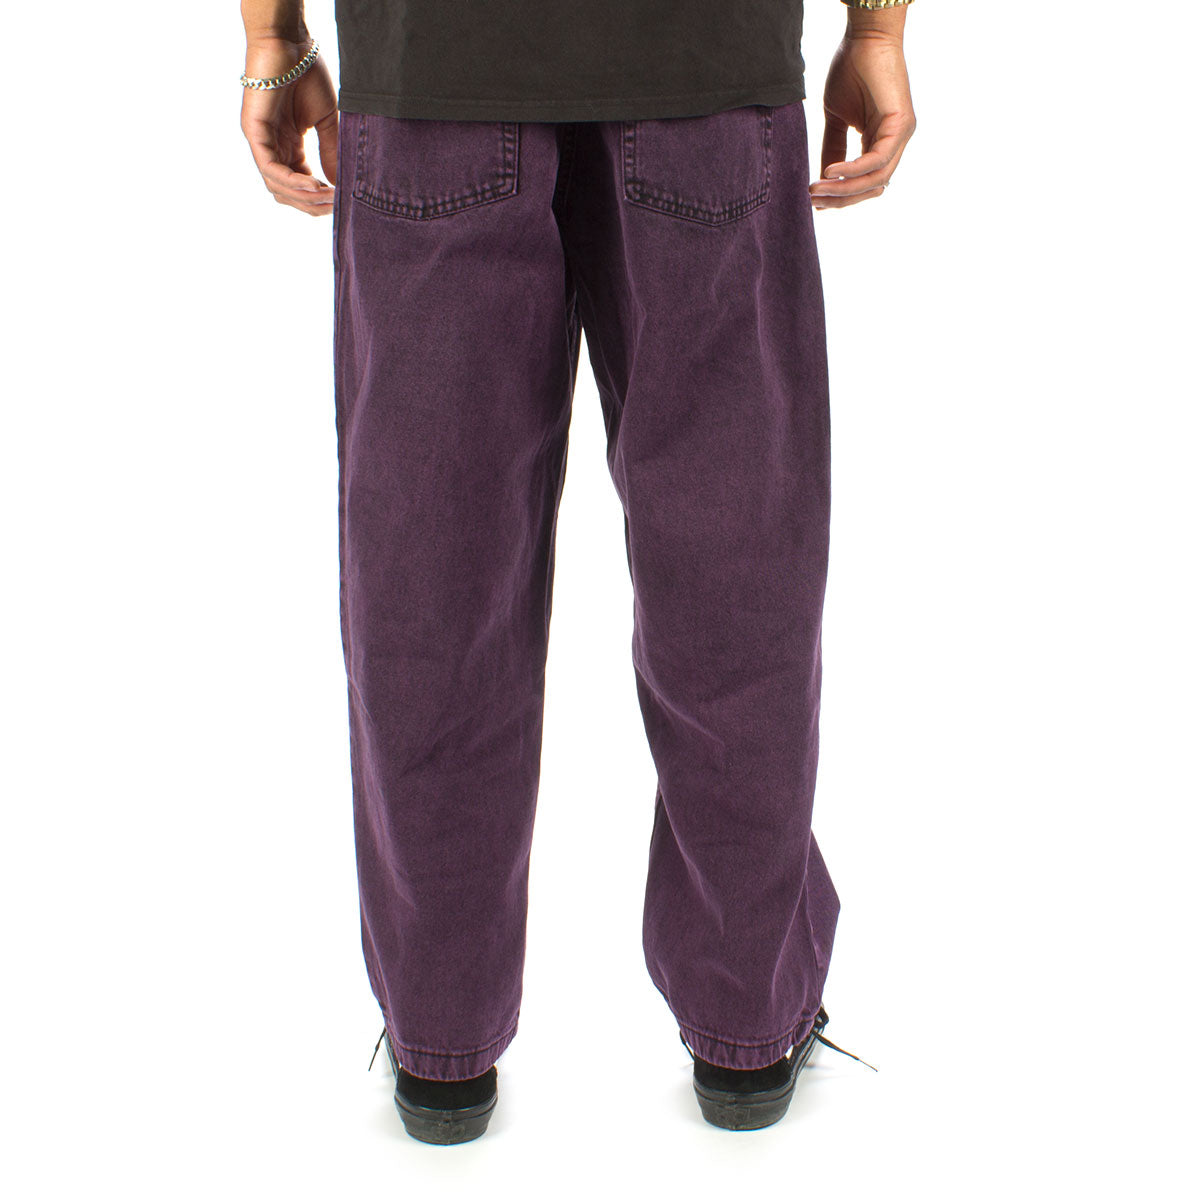 廉価版 Polar Skate Big Boy Jeans Purple Black - パンツ